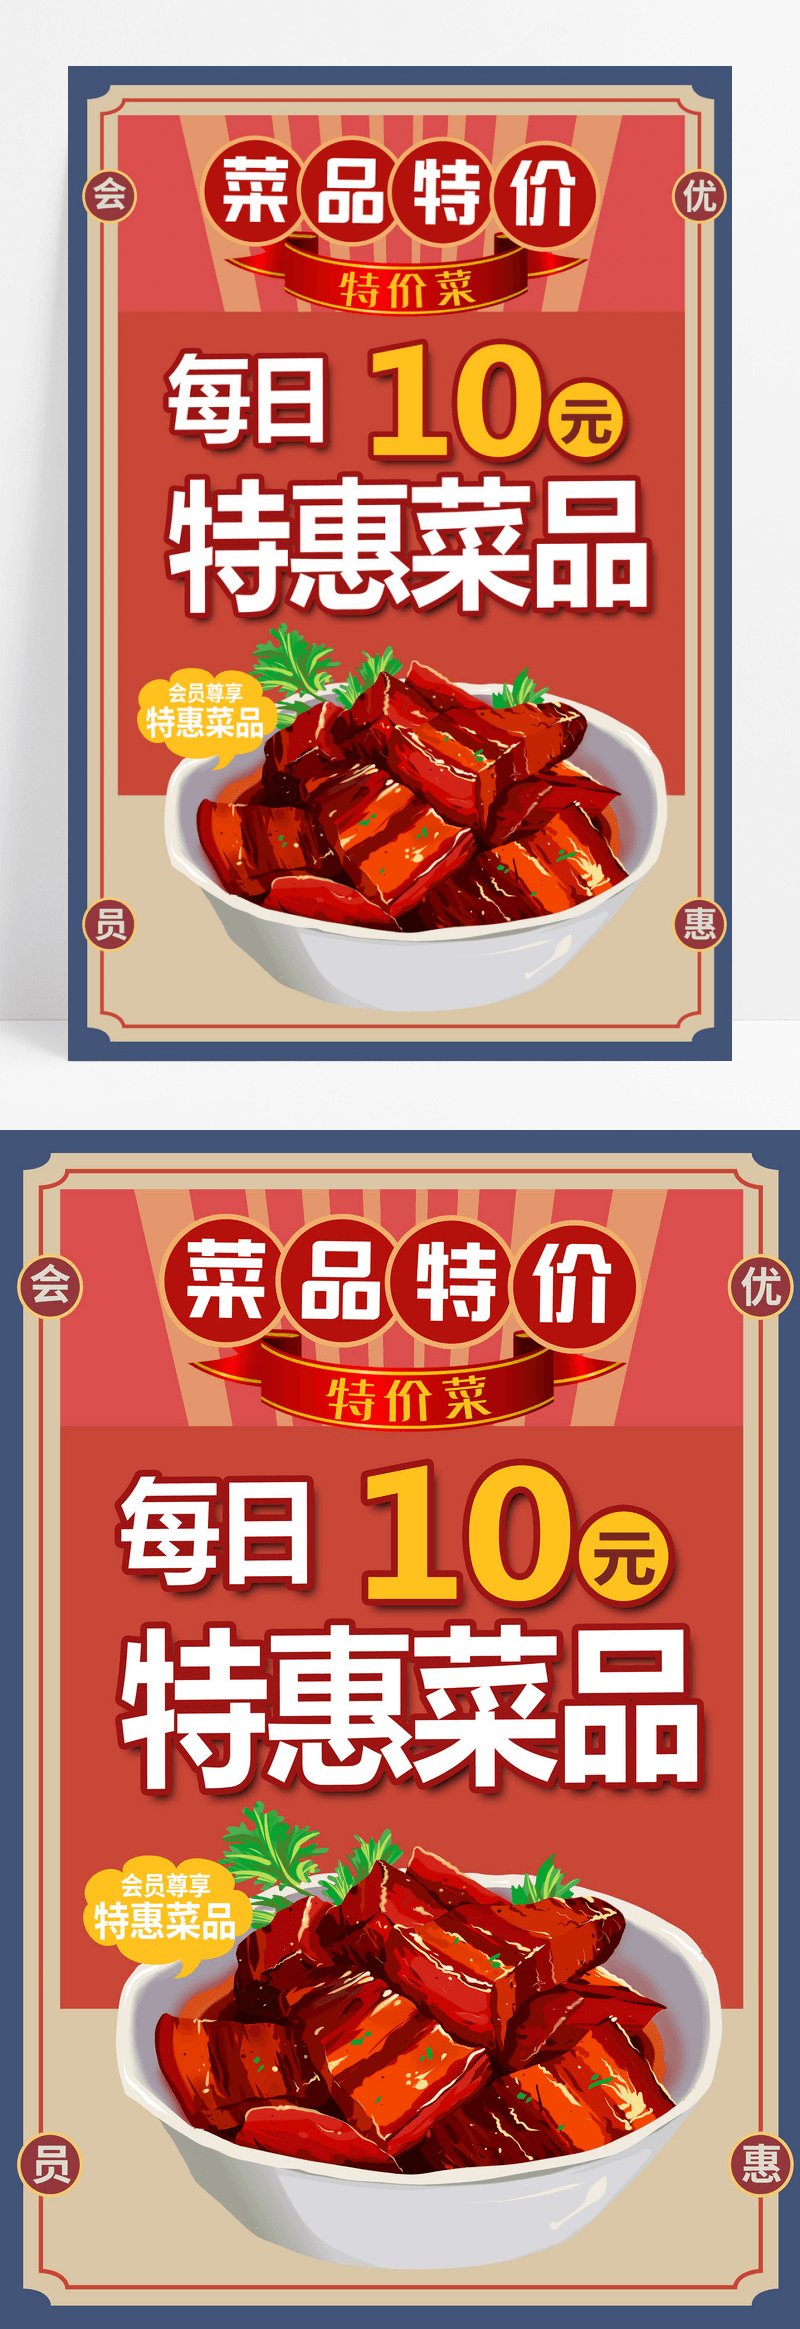 传统复古红色10元特惠菜品特价菜宣传海报设计